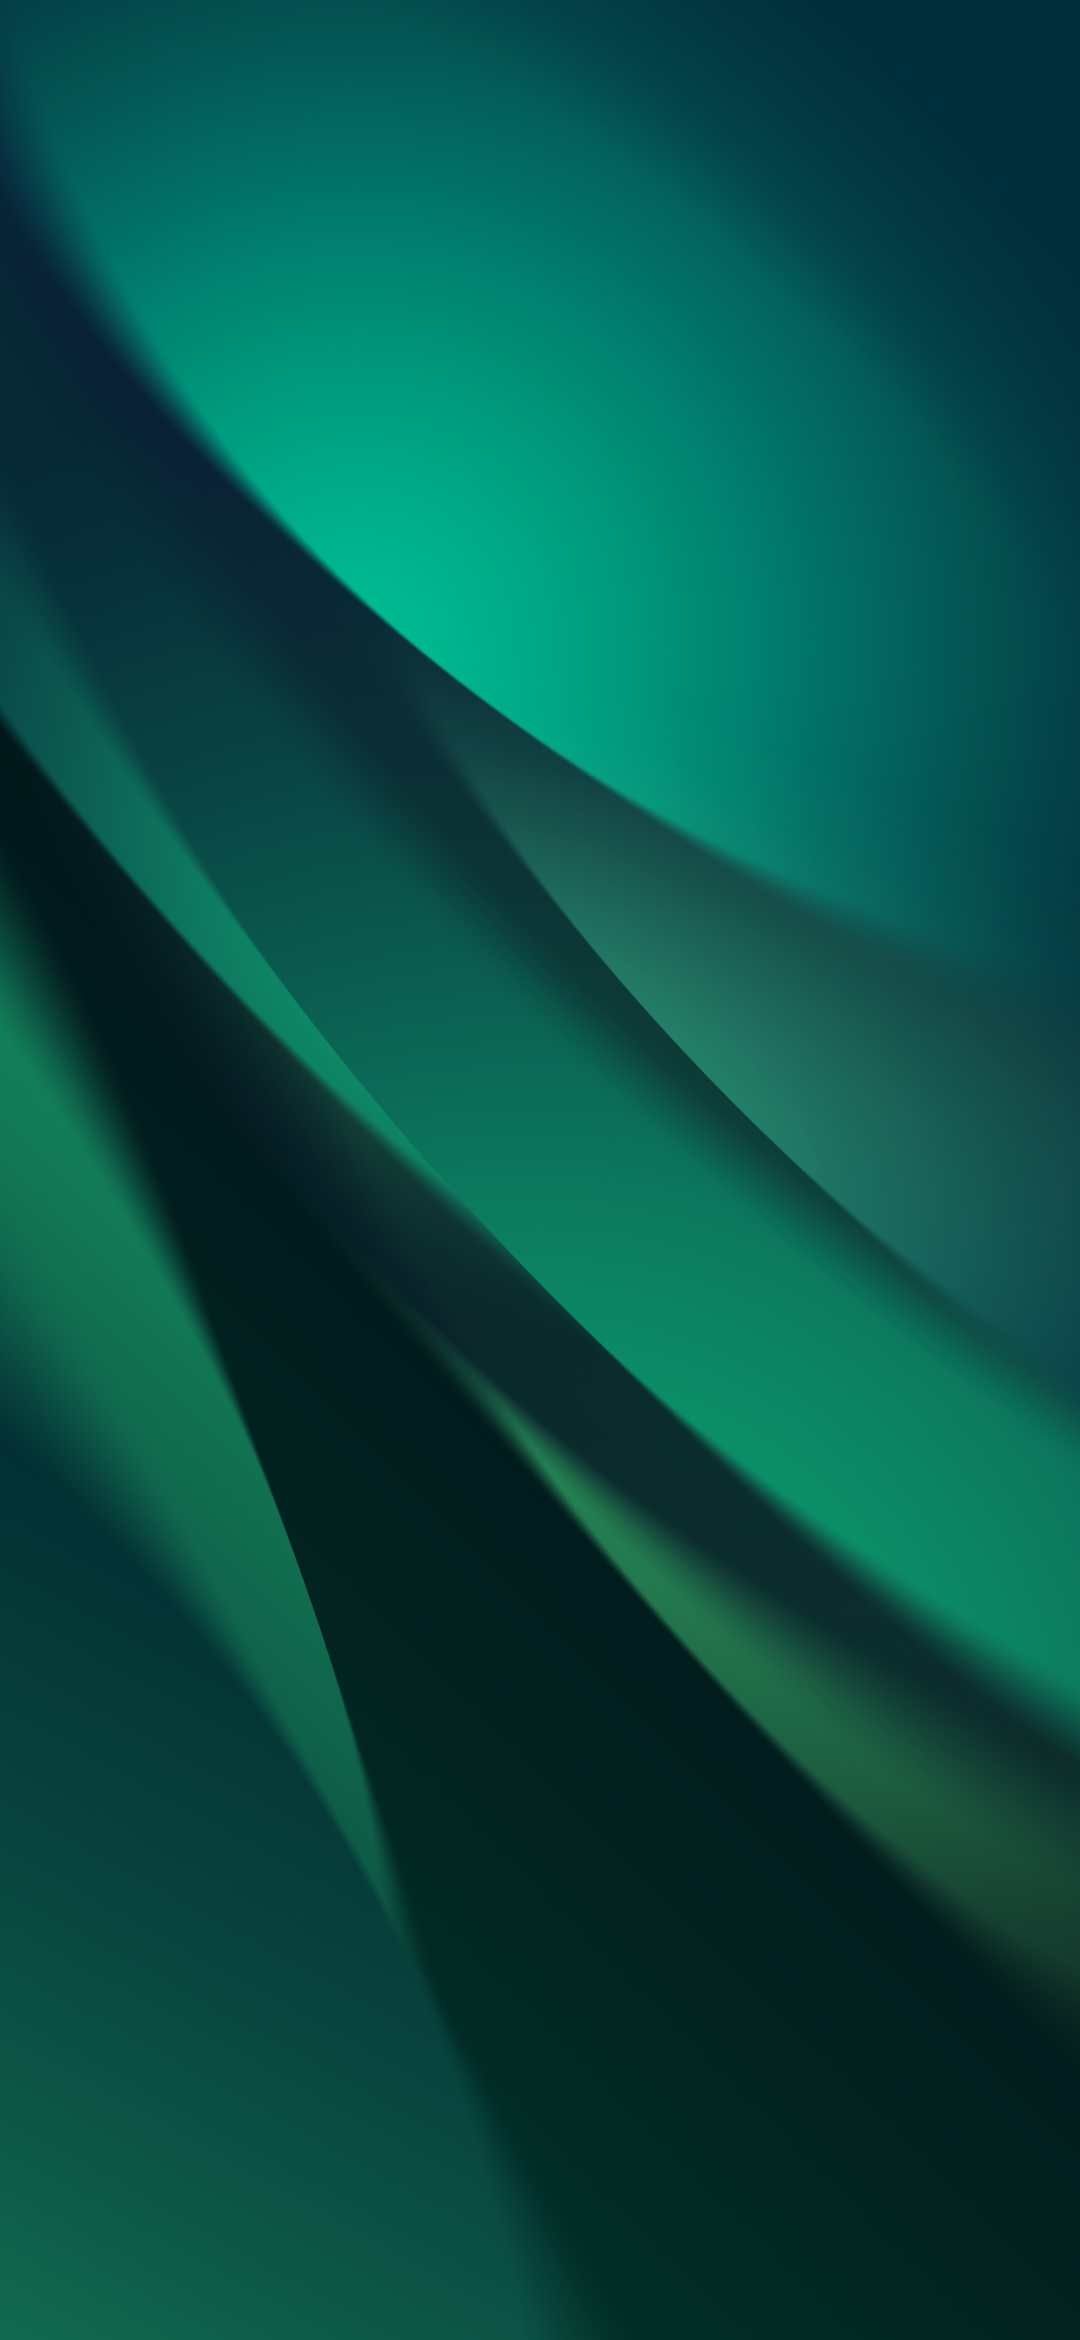 かっこいい緑のグラデーション Galaxy A30 Android 壁紙 待ち受け Sumaran